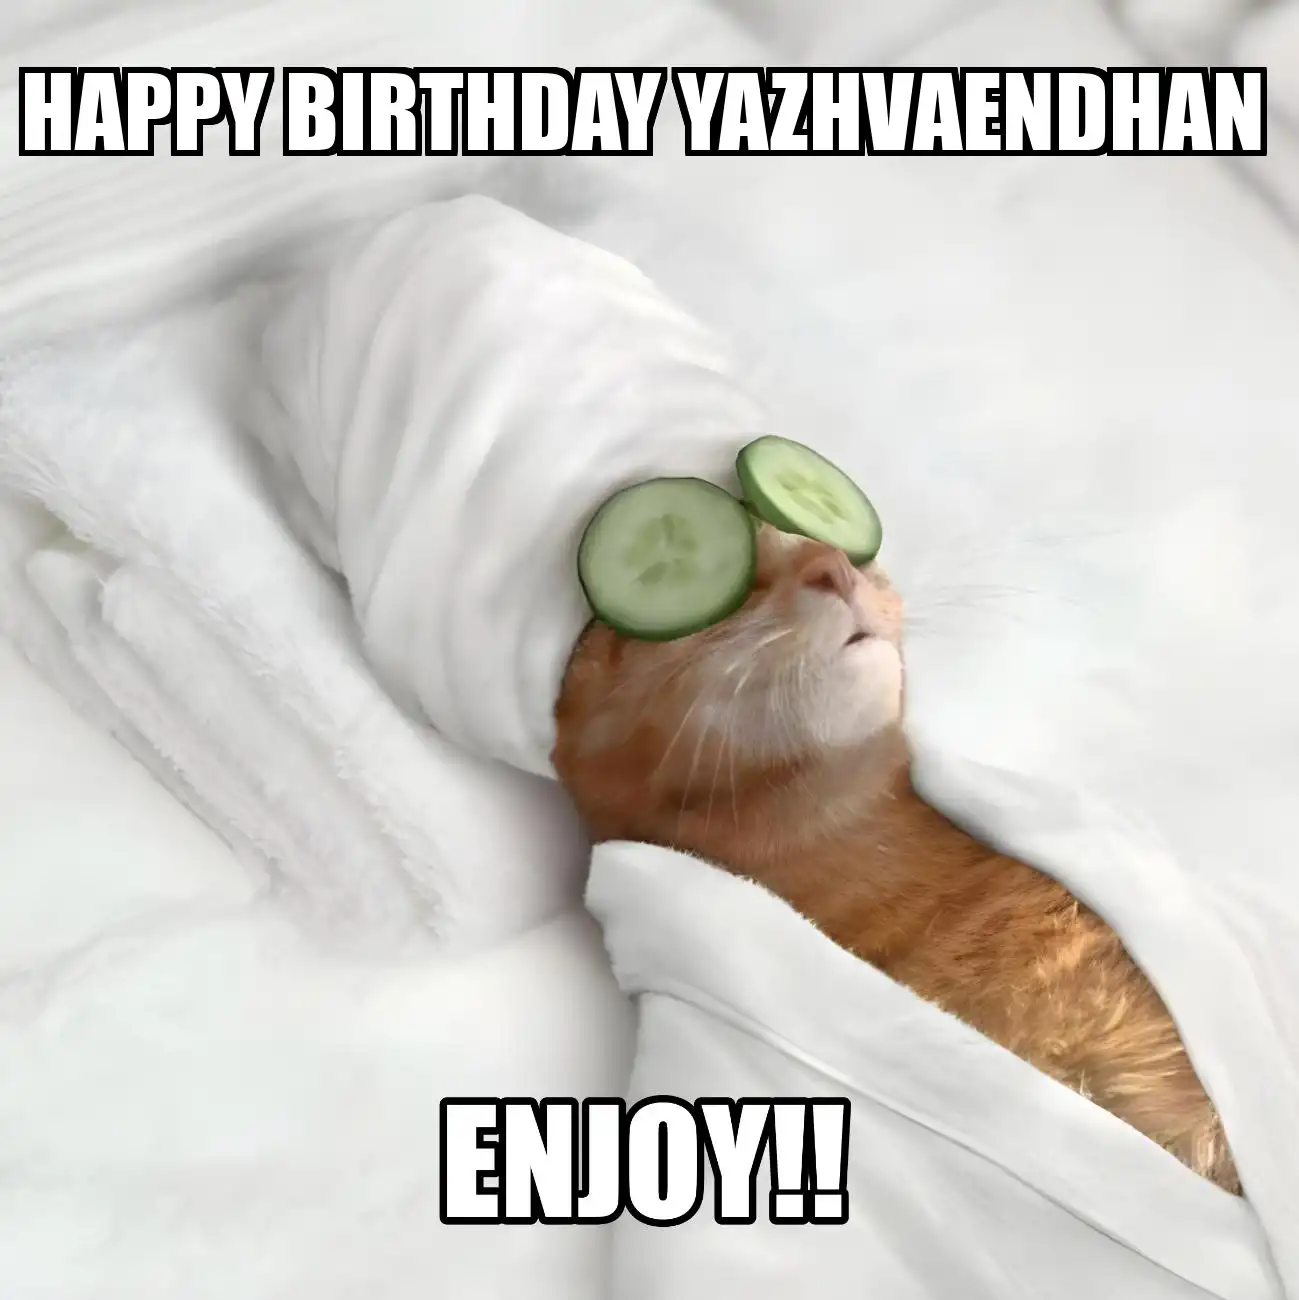 Happy Birthday Yazhvaendhan Enjoy Cat Meme